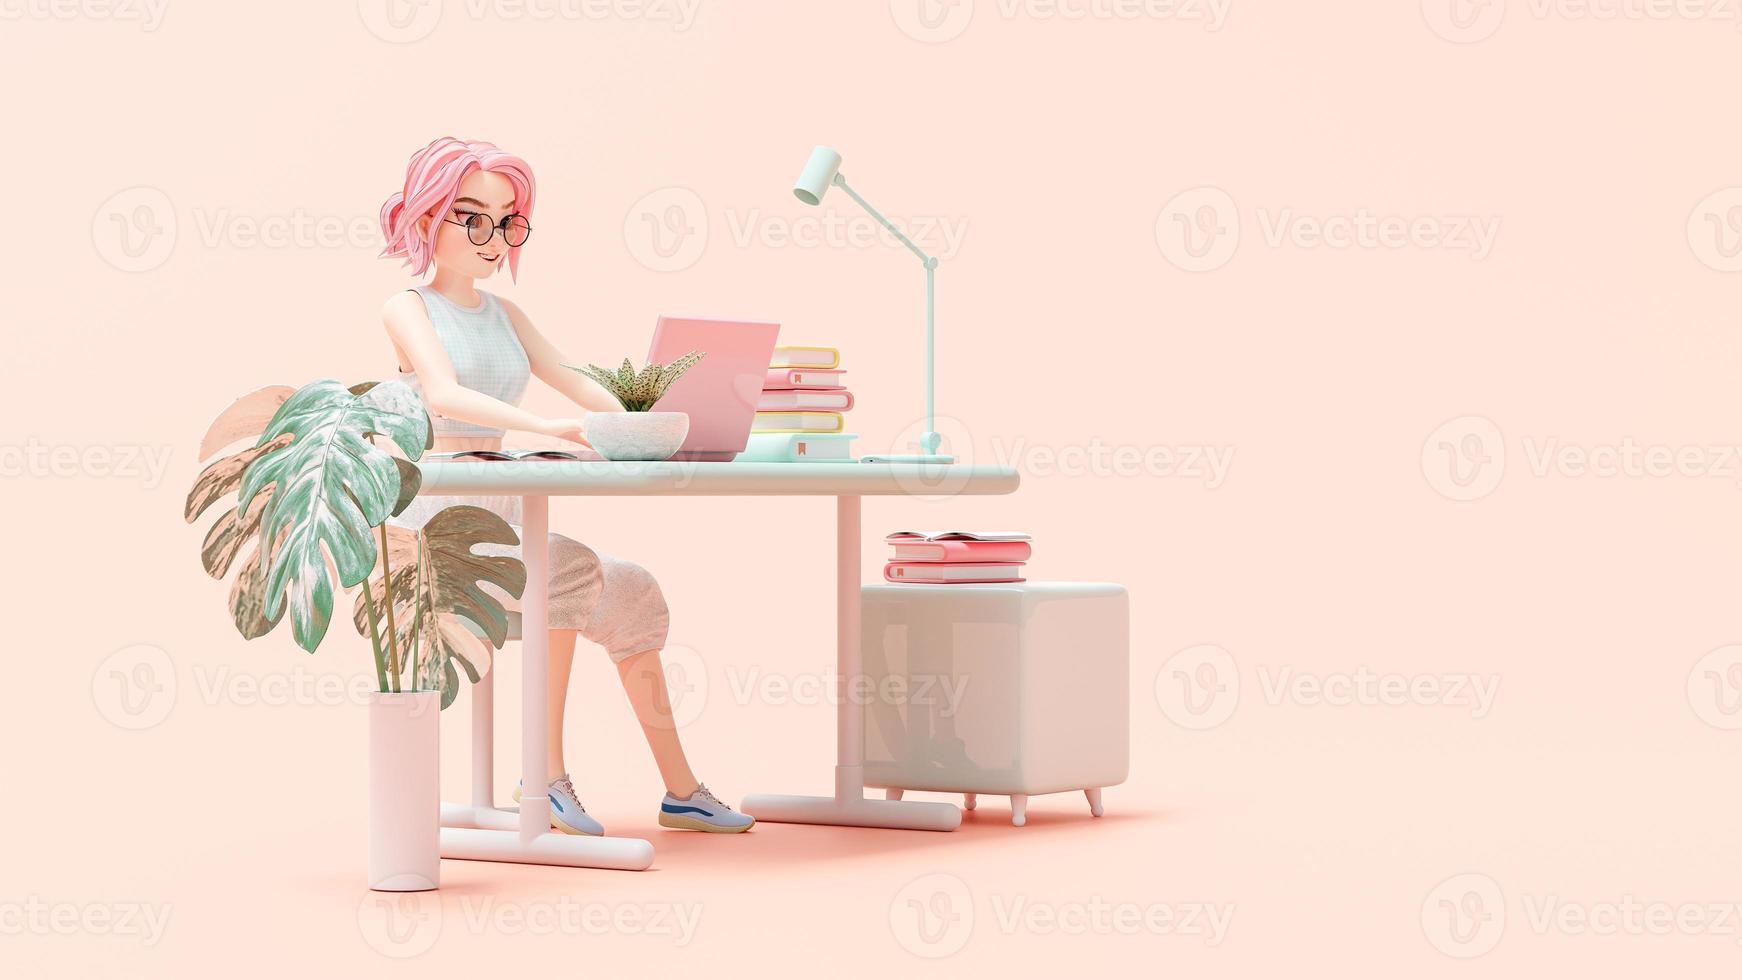 jovem feliz sentada na cadeira. gosta de estudar, aprender e pesquisar informações do computador. laptop rosa é colocado na mesa de trabalho. personagem de desenho animado, renderização em 3d foto